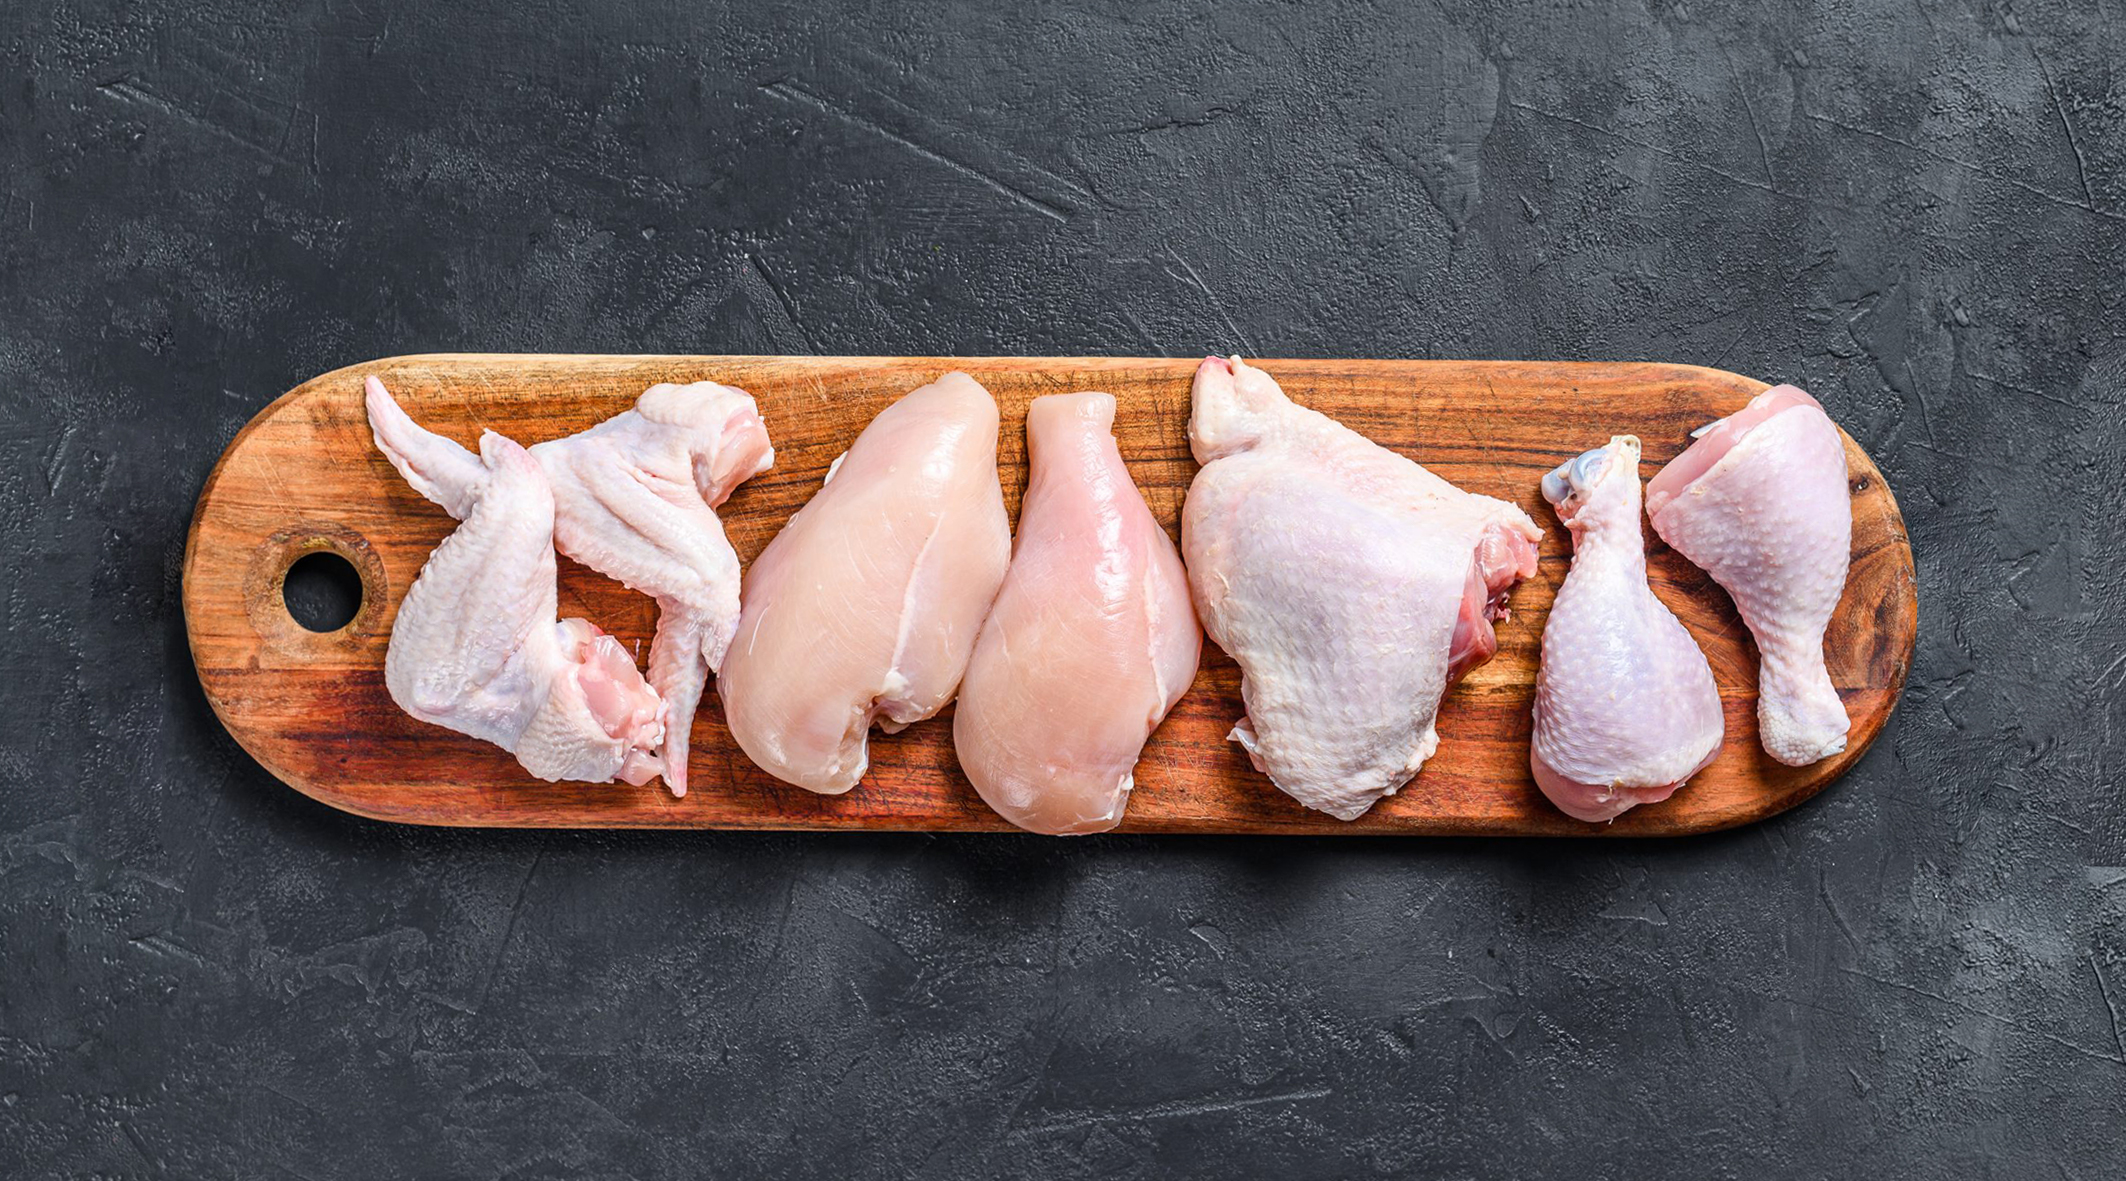 ارزش غذایی و مضرات استفاده گوشت مرغ